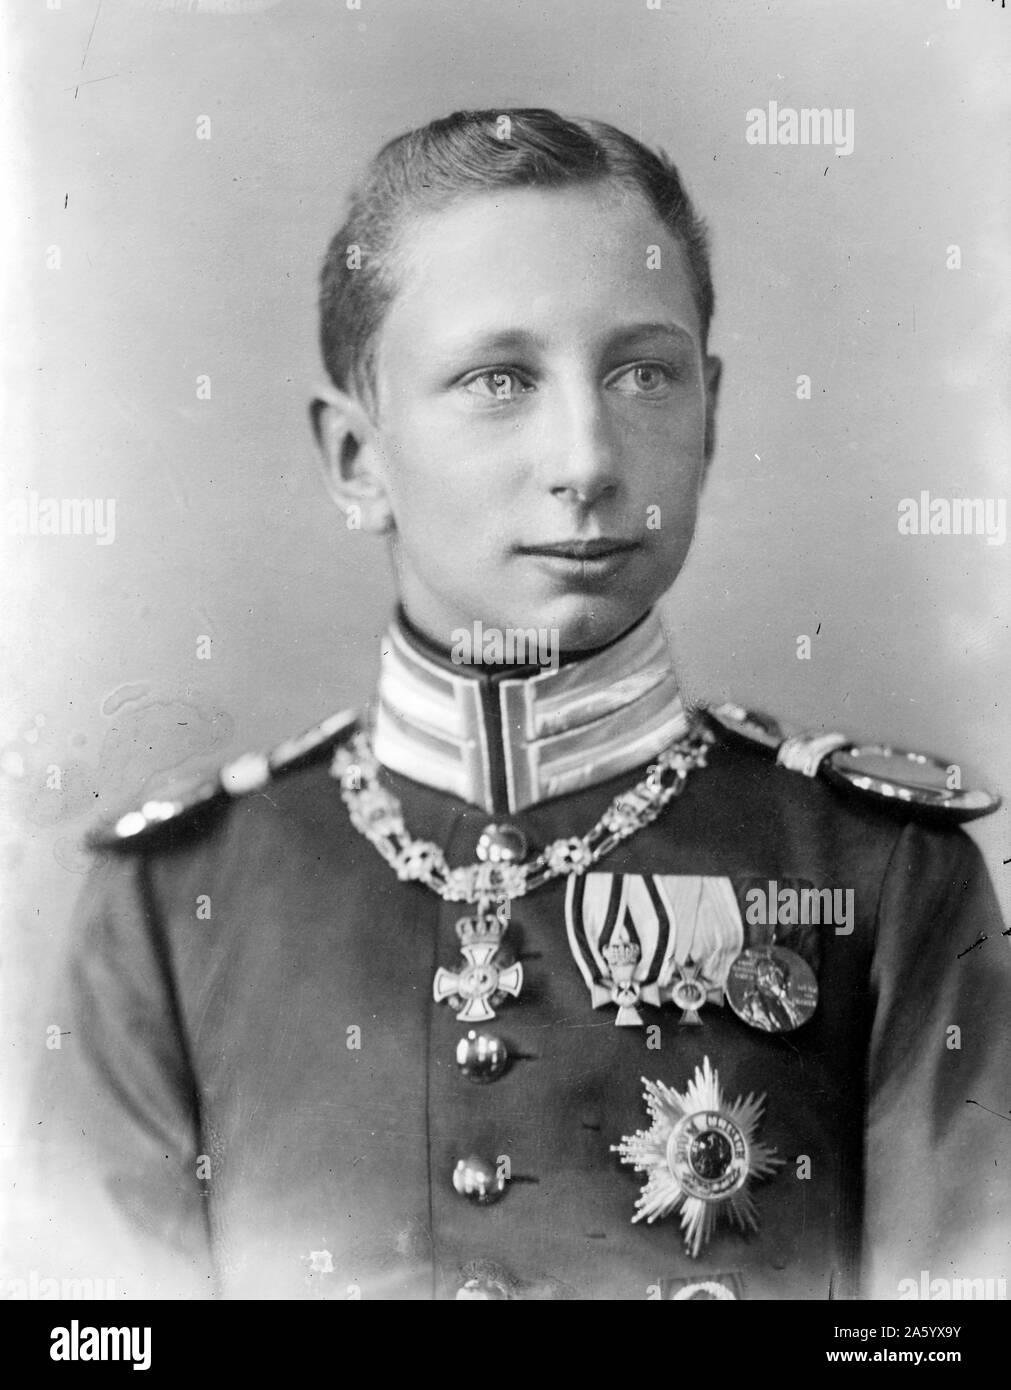 Portrait photographique de Prince Joachim de Prusse (1890-1920), le Prince Joachim Franz Humbert de Prusse était le plus jeune fils de Guillaume II, Empereur allemand, par sa première femme, Augusta Victoria de Schleswig-Holstein. Datée 1916 Banque D'Images